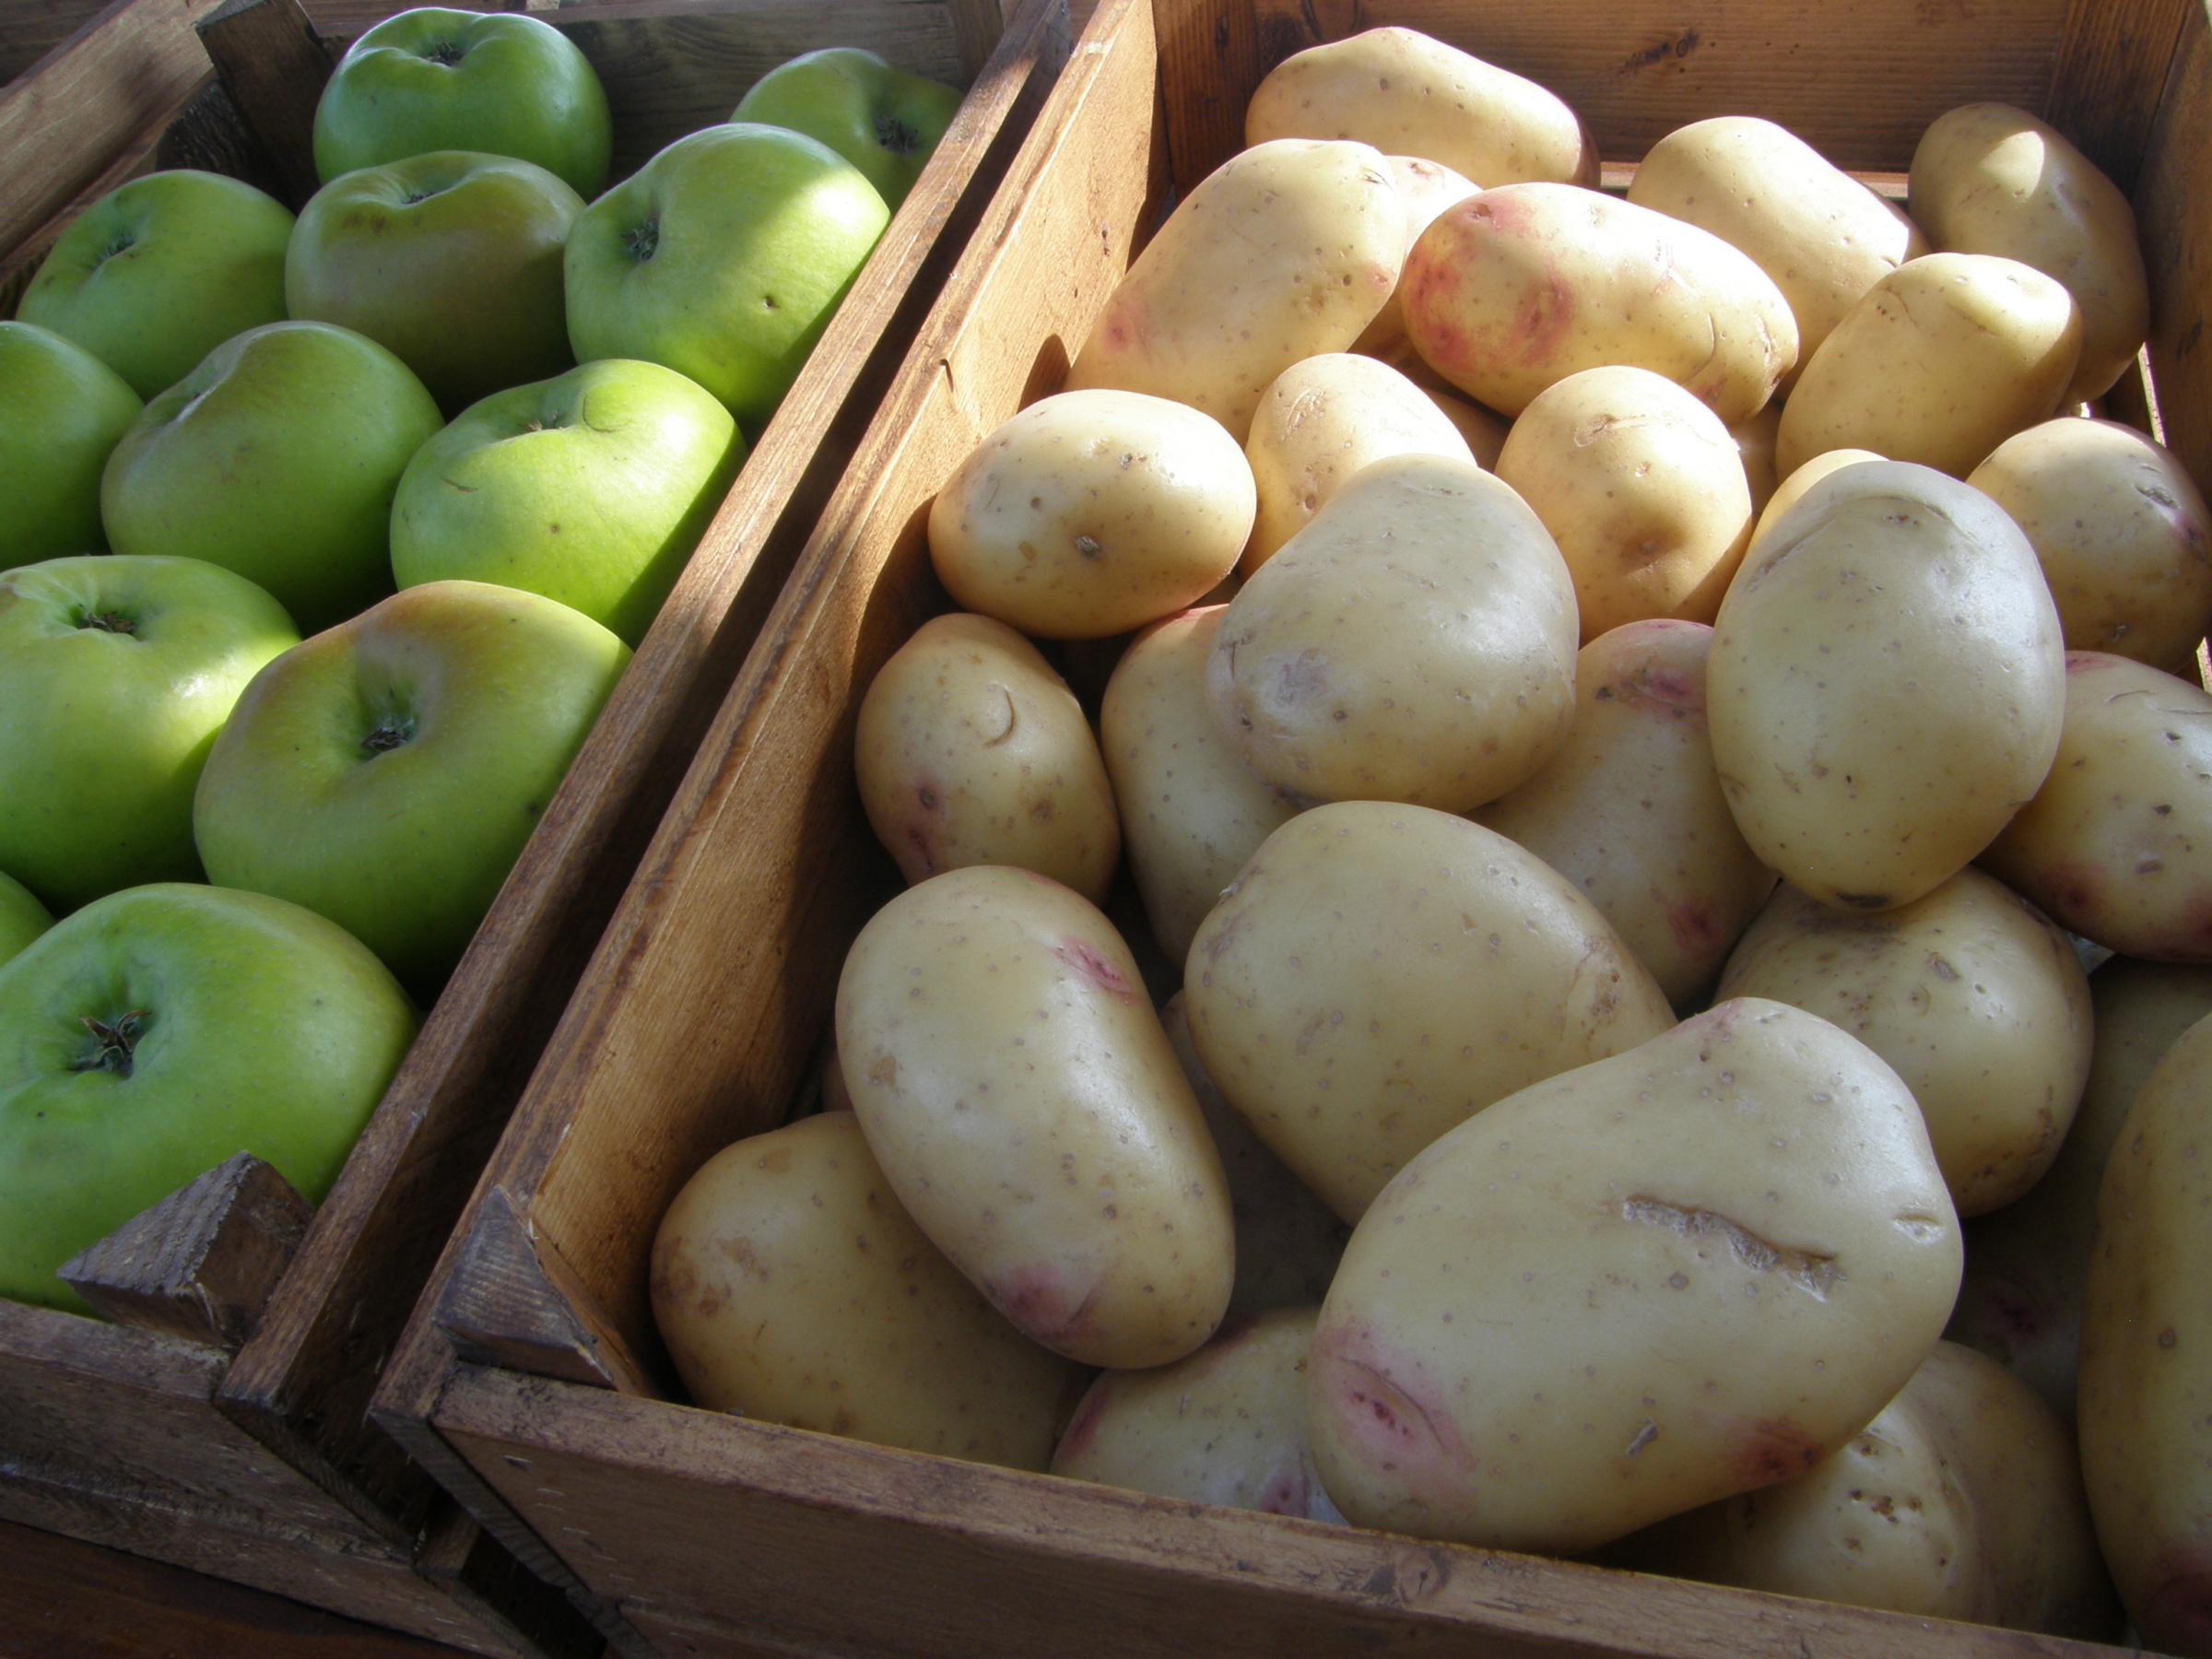 Crisp maker turns potato waste into fertiliser